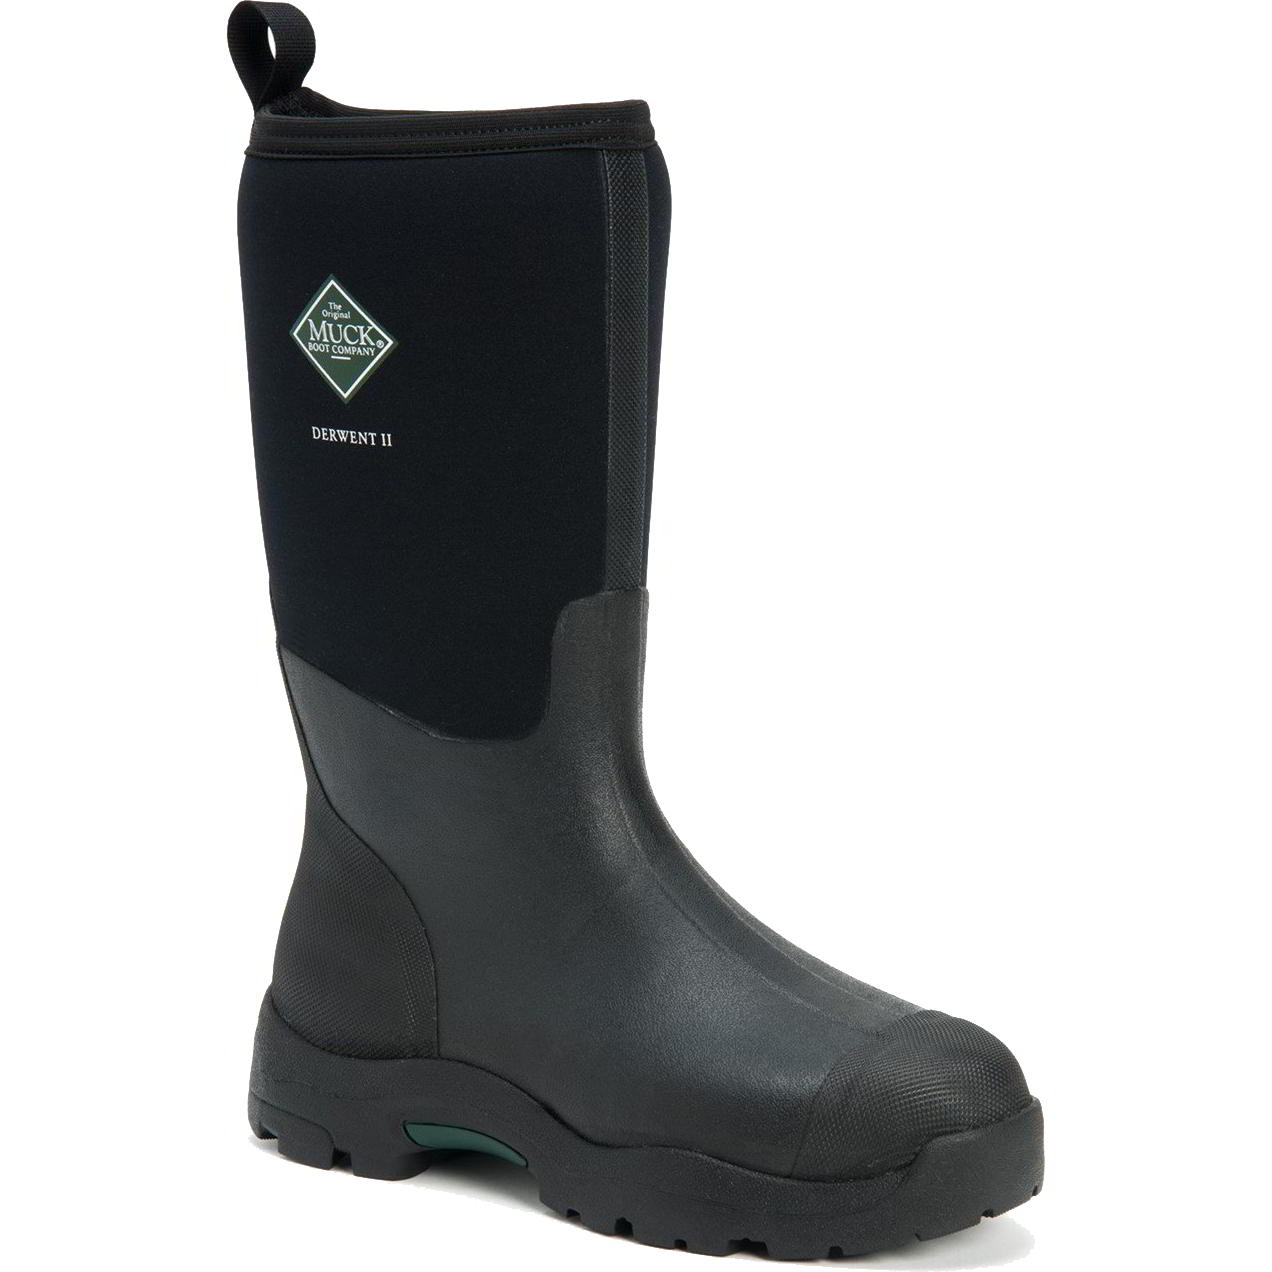 Muck Boots Mens Derwent II Neoprene Wellies Rain - UK 7 Black 2951